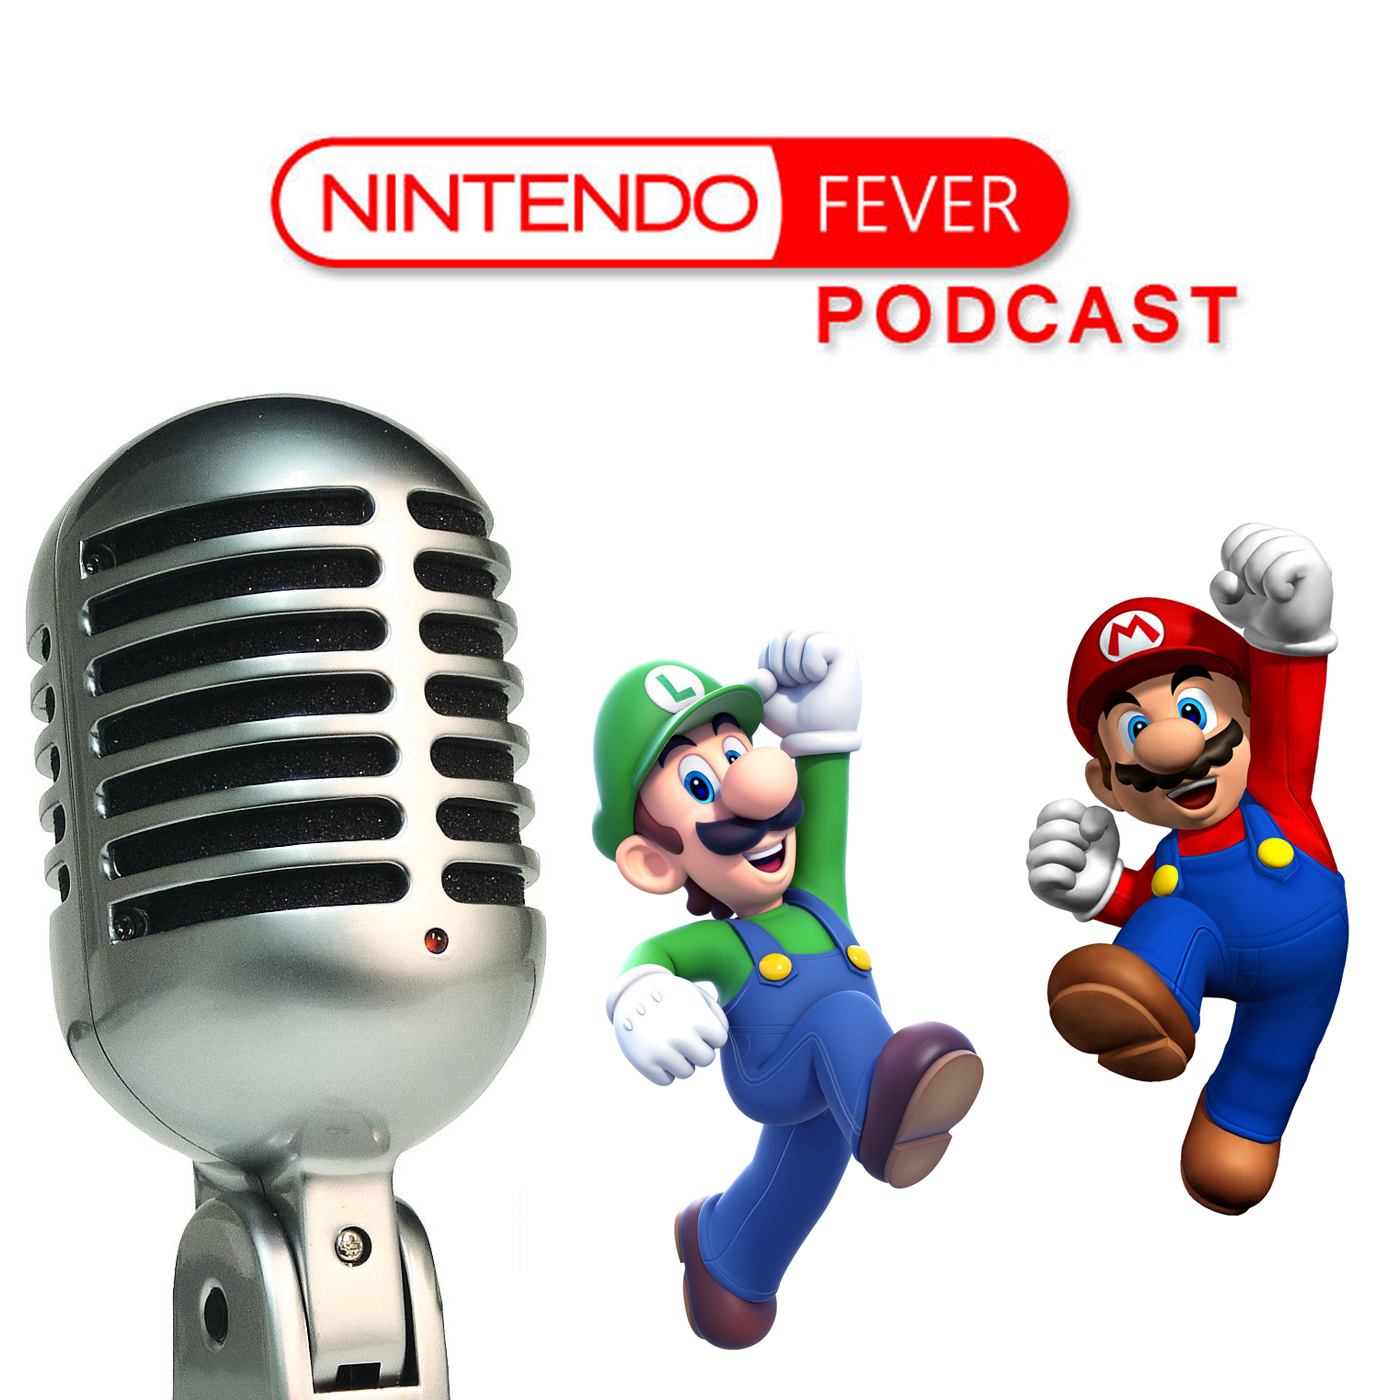 NintendoFever Podcast Episode 98: E3 2018